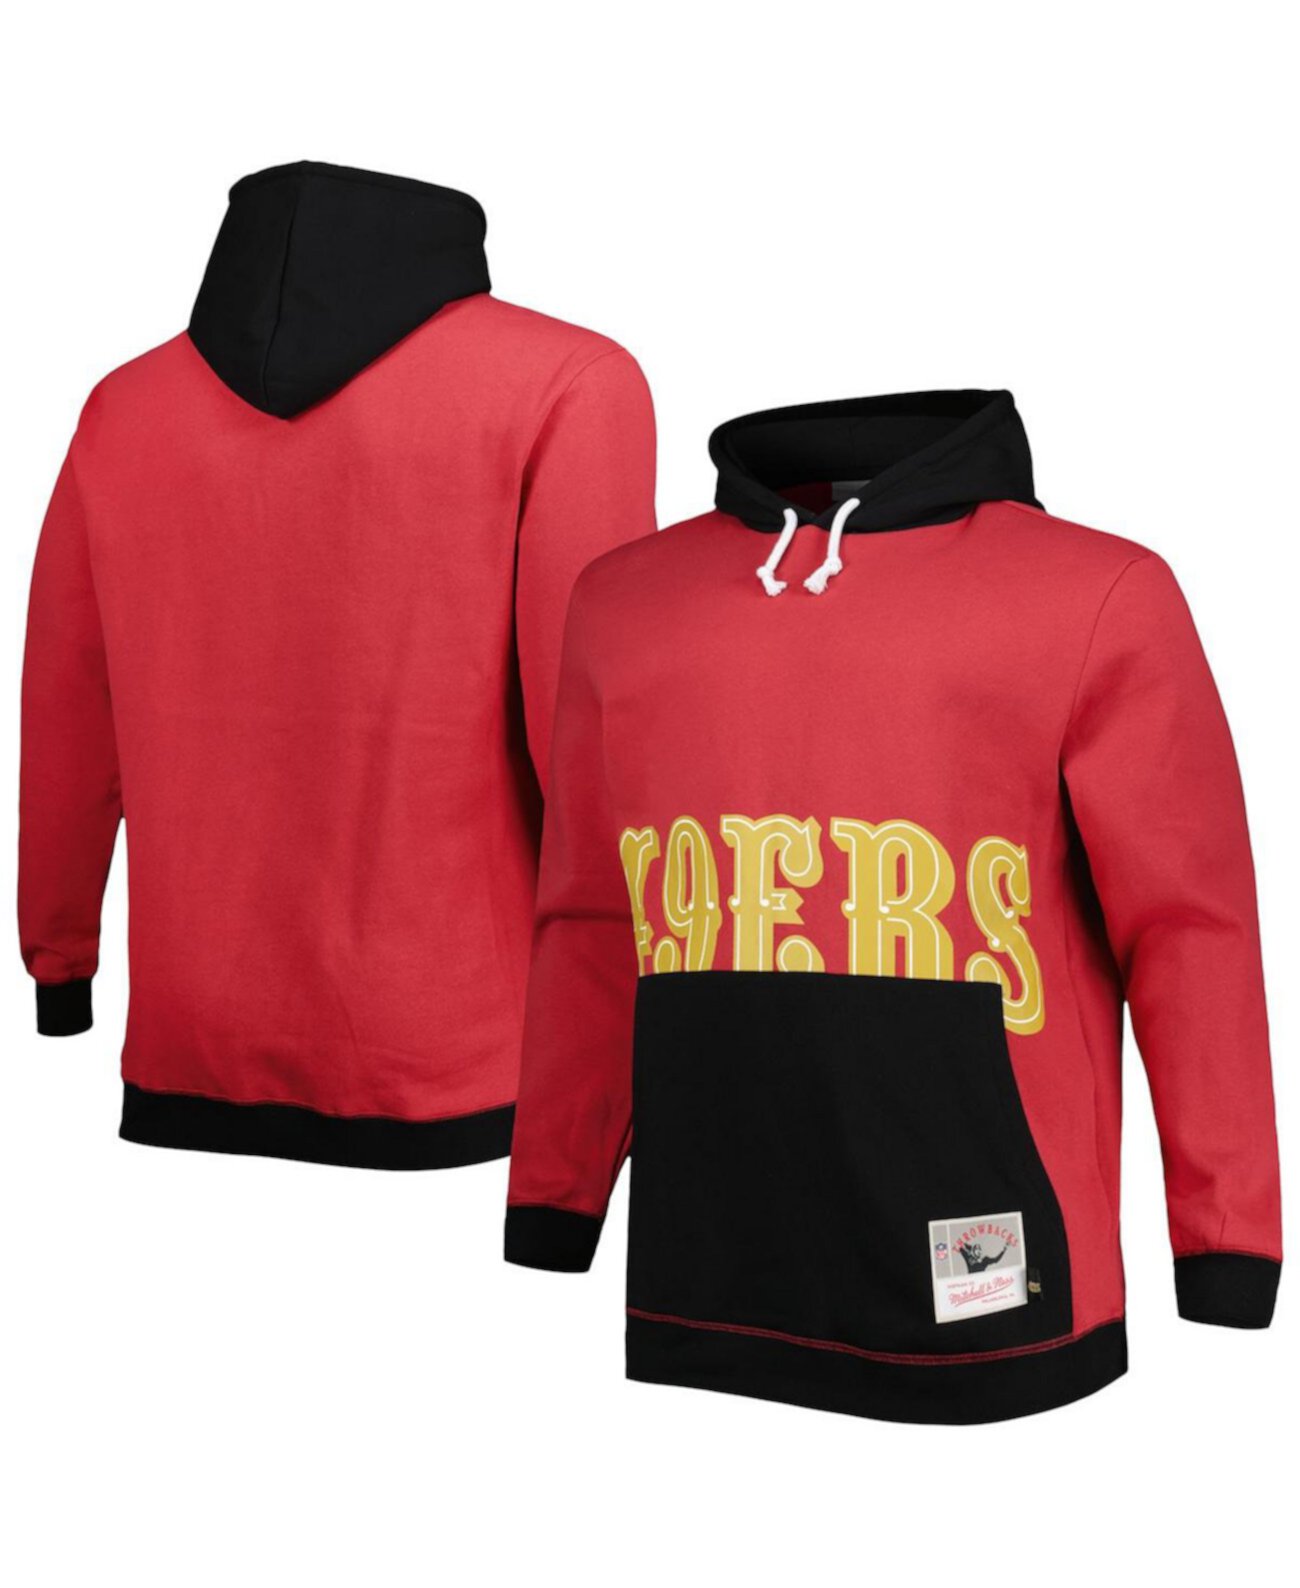 Мужской пуловер с капюшоном алого и черного цвета San Francisco 49ers Big and Tall Big Face Mitchell & Ness